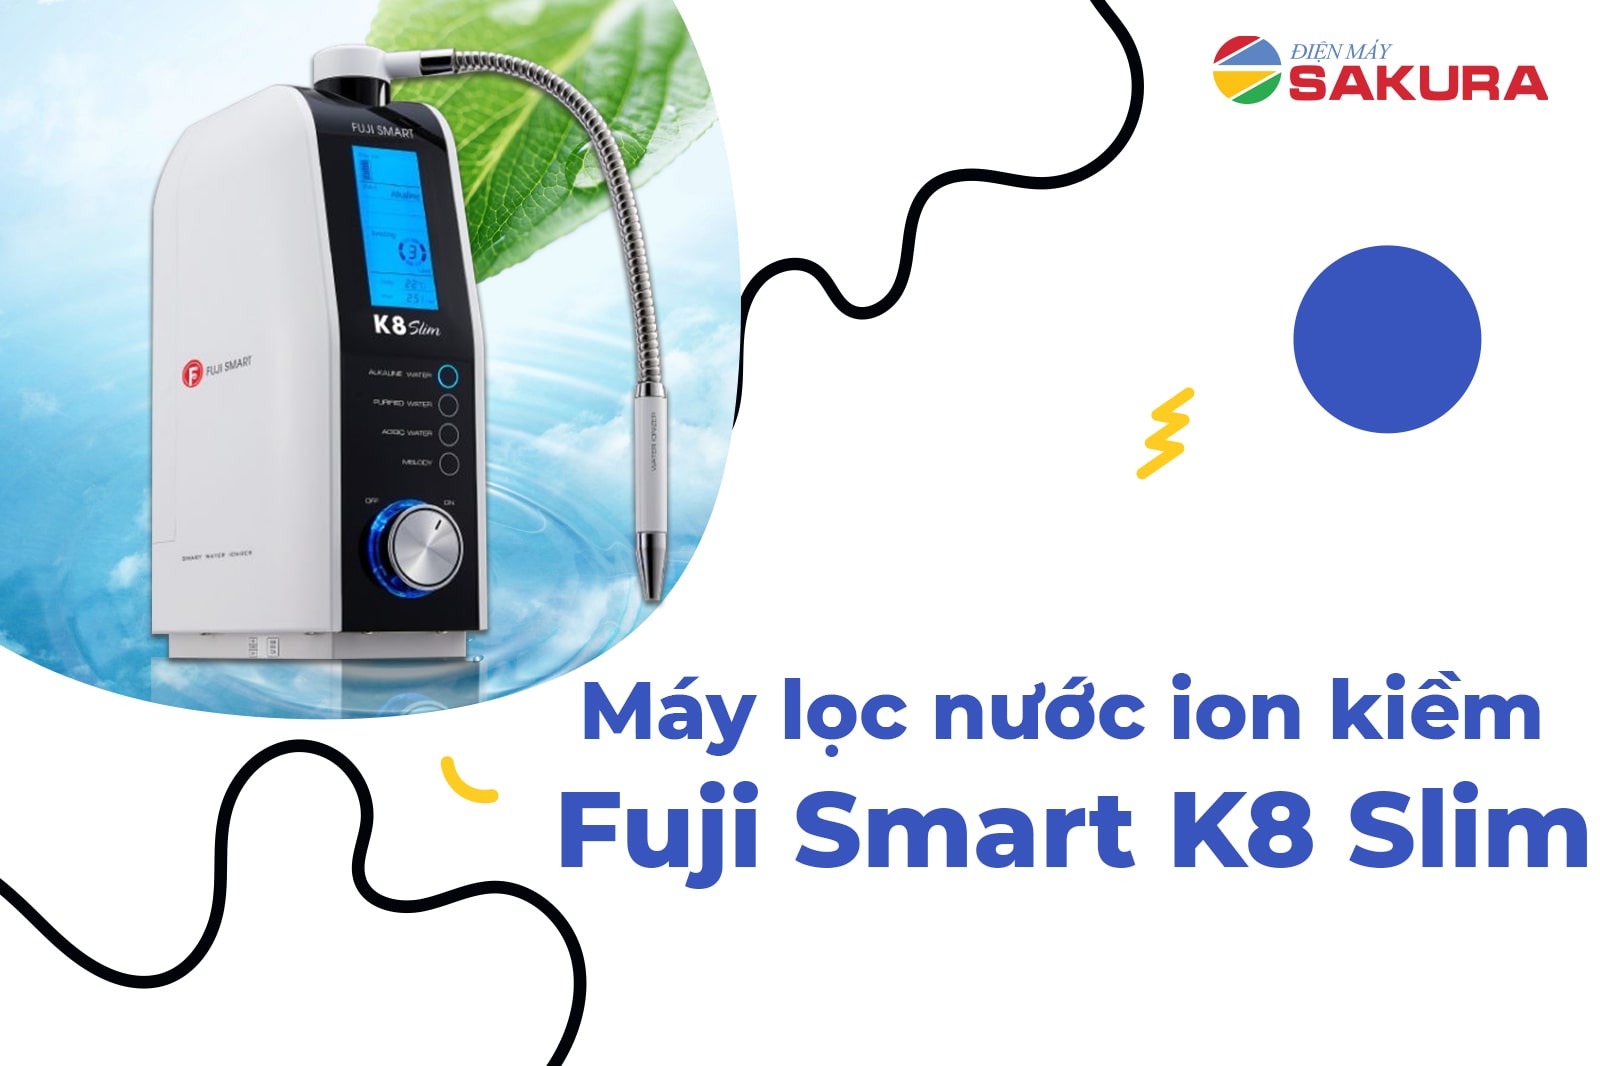 Tìm hiểu về máy lọc nước ion kiềm Fuji Smart K8 Slim